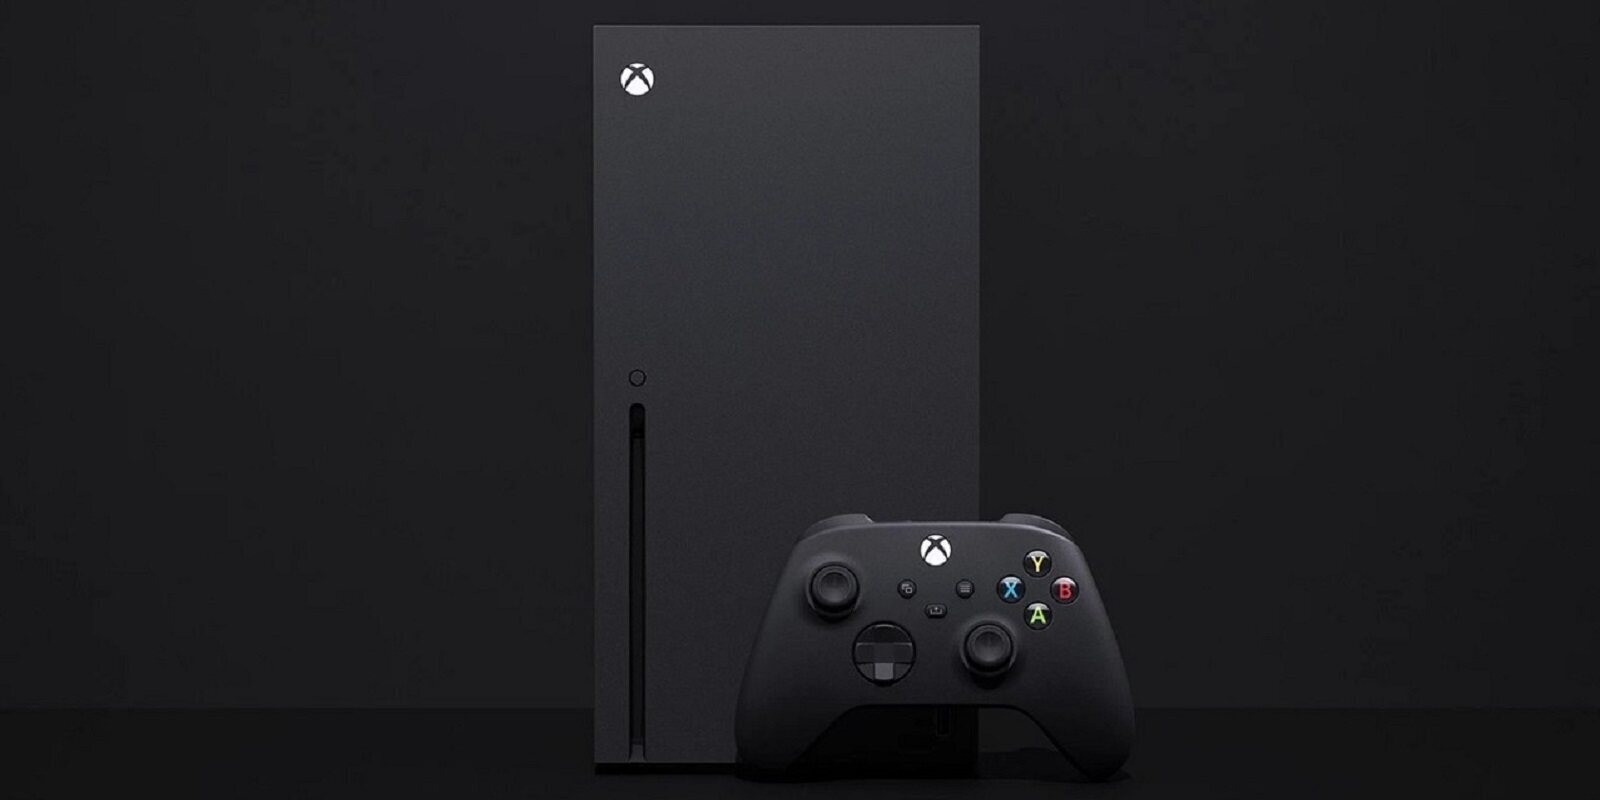 Los usuarios de Xbox One podrán jugar a títulos de Xbox Series X en la nube, según Microsoft